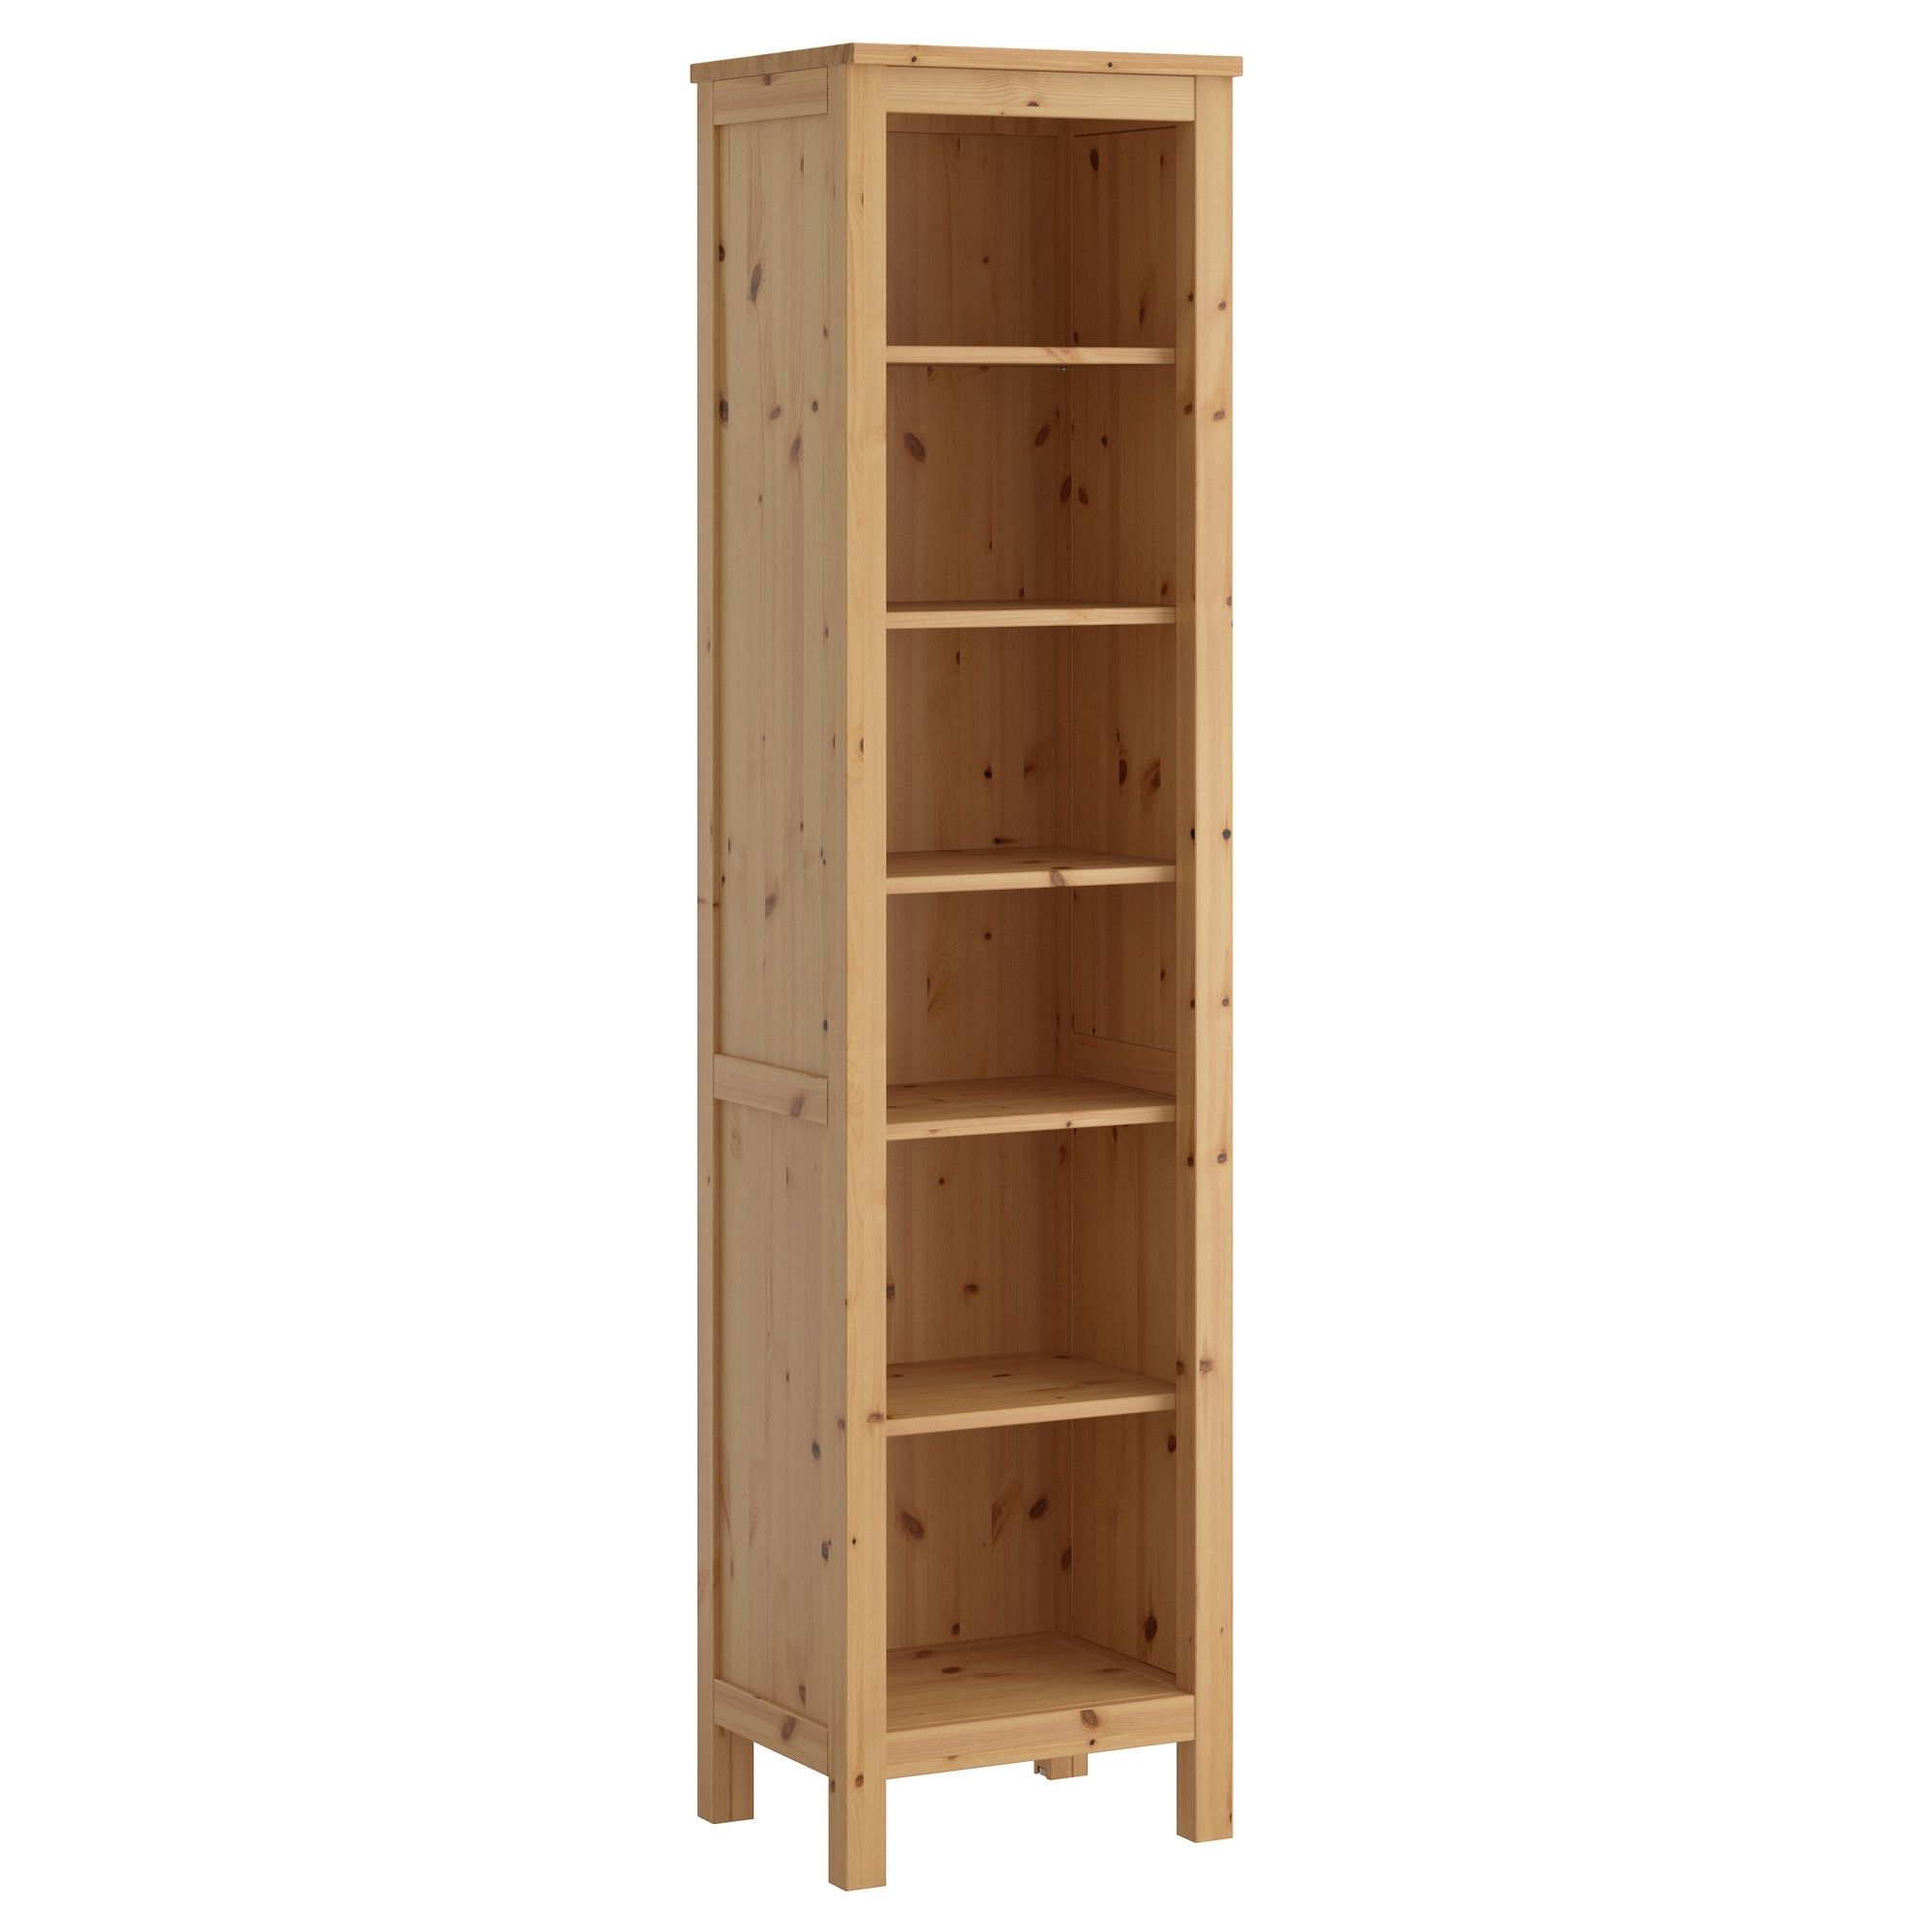 Preferred Ikea Corner Bookcases In Corner Bookcase & Tall Bookcase (View 15 of 15)